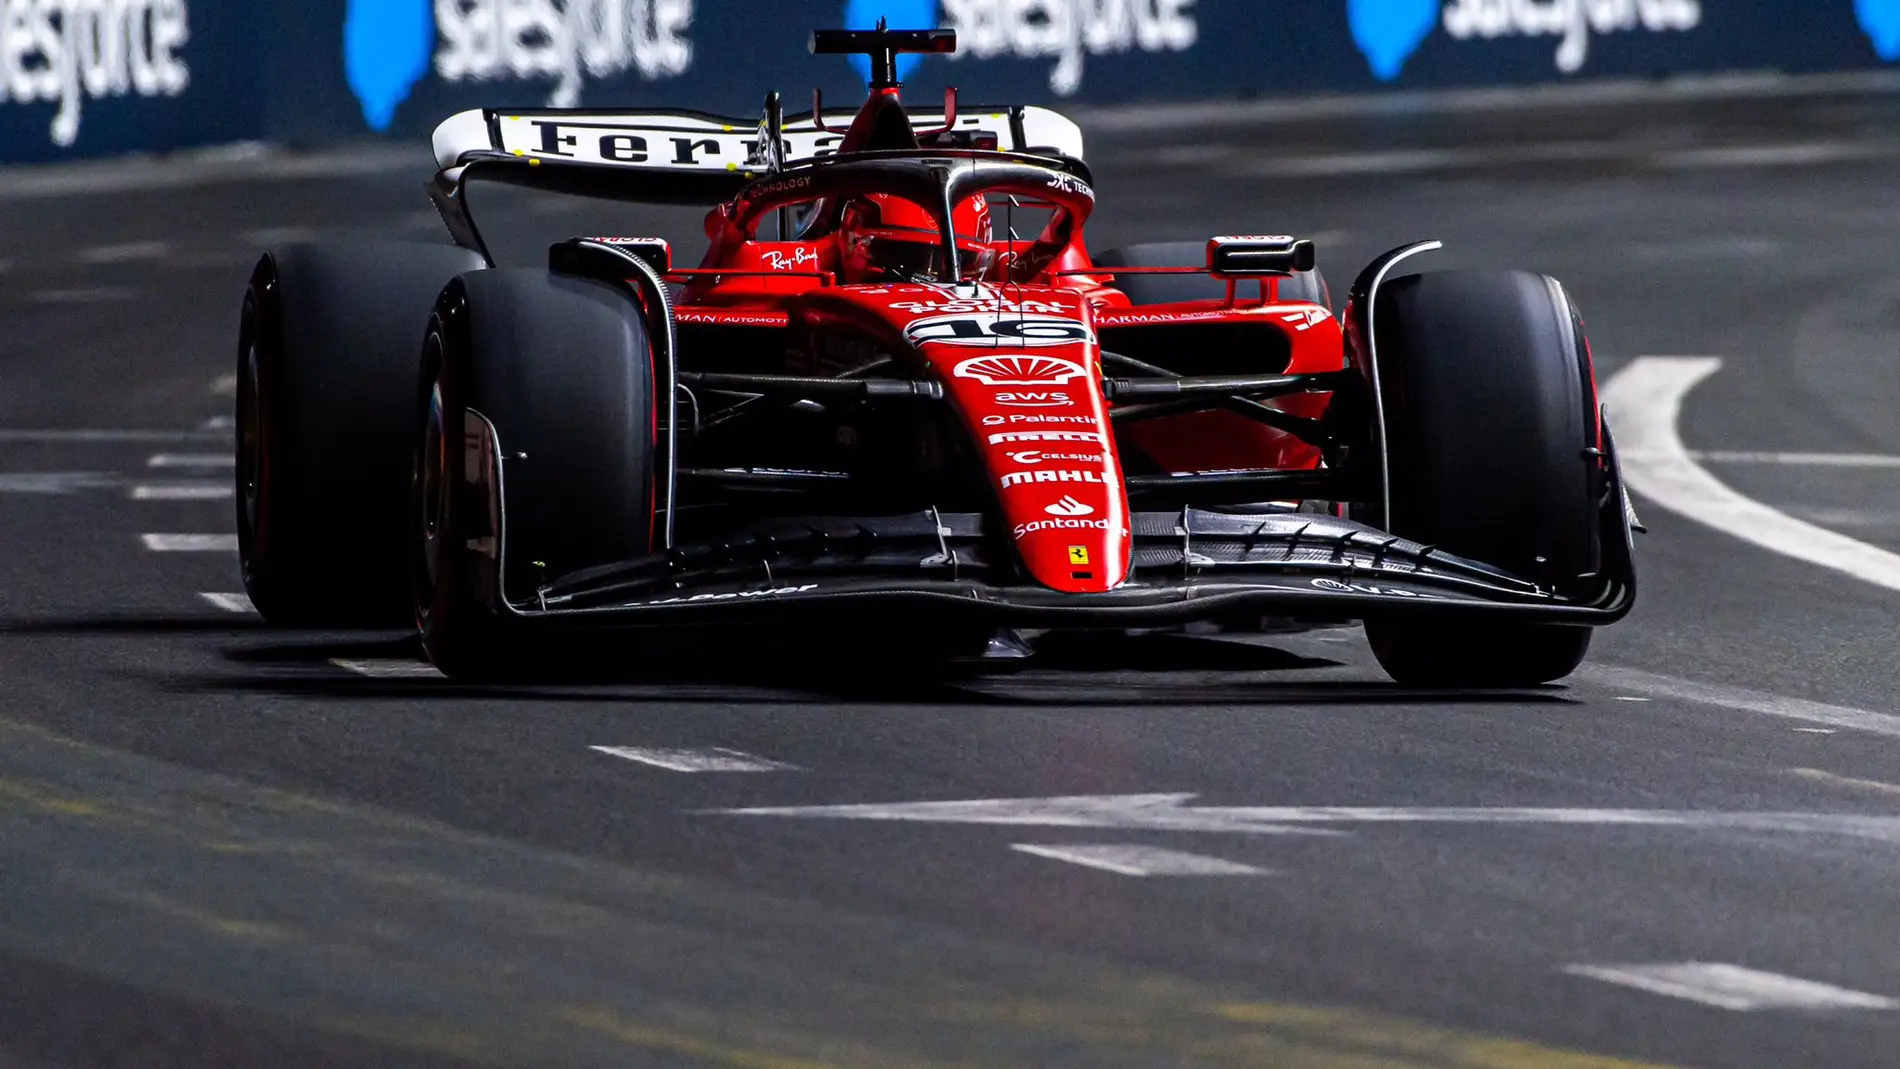 La F1 recupera la normalidad en Las Vegas con Charles Leclerc al frente 